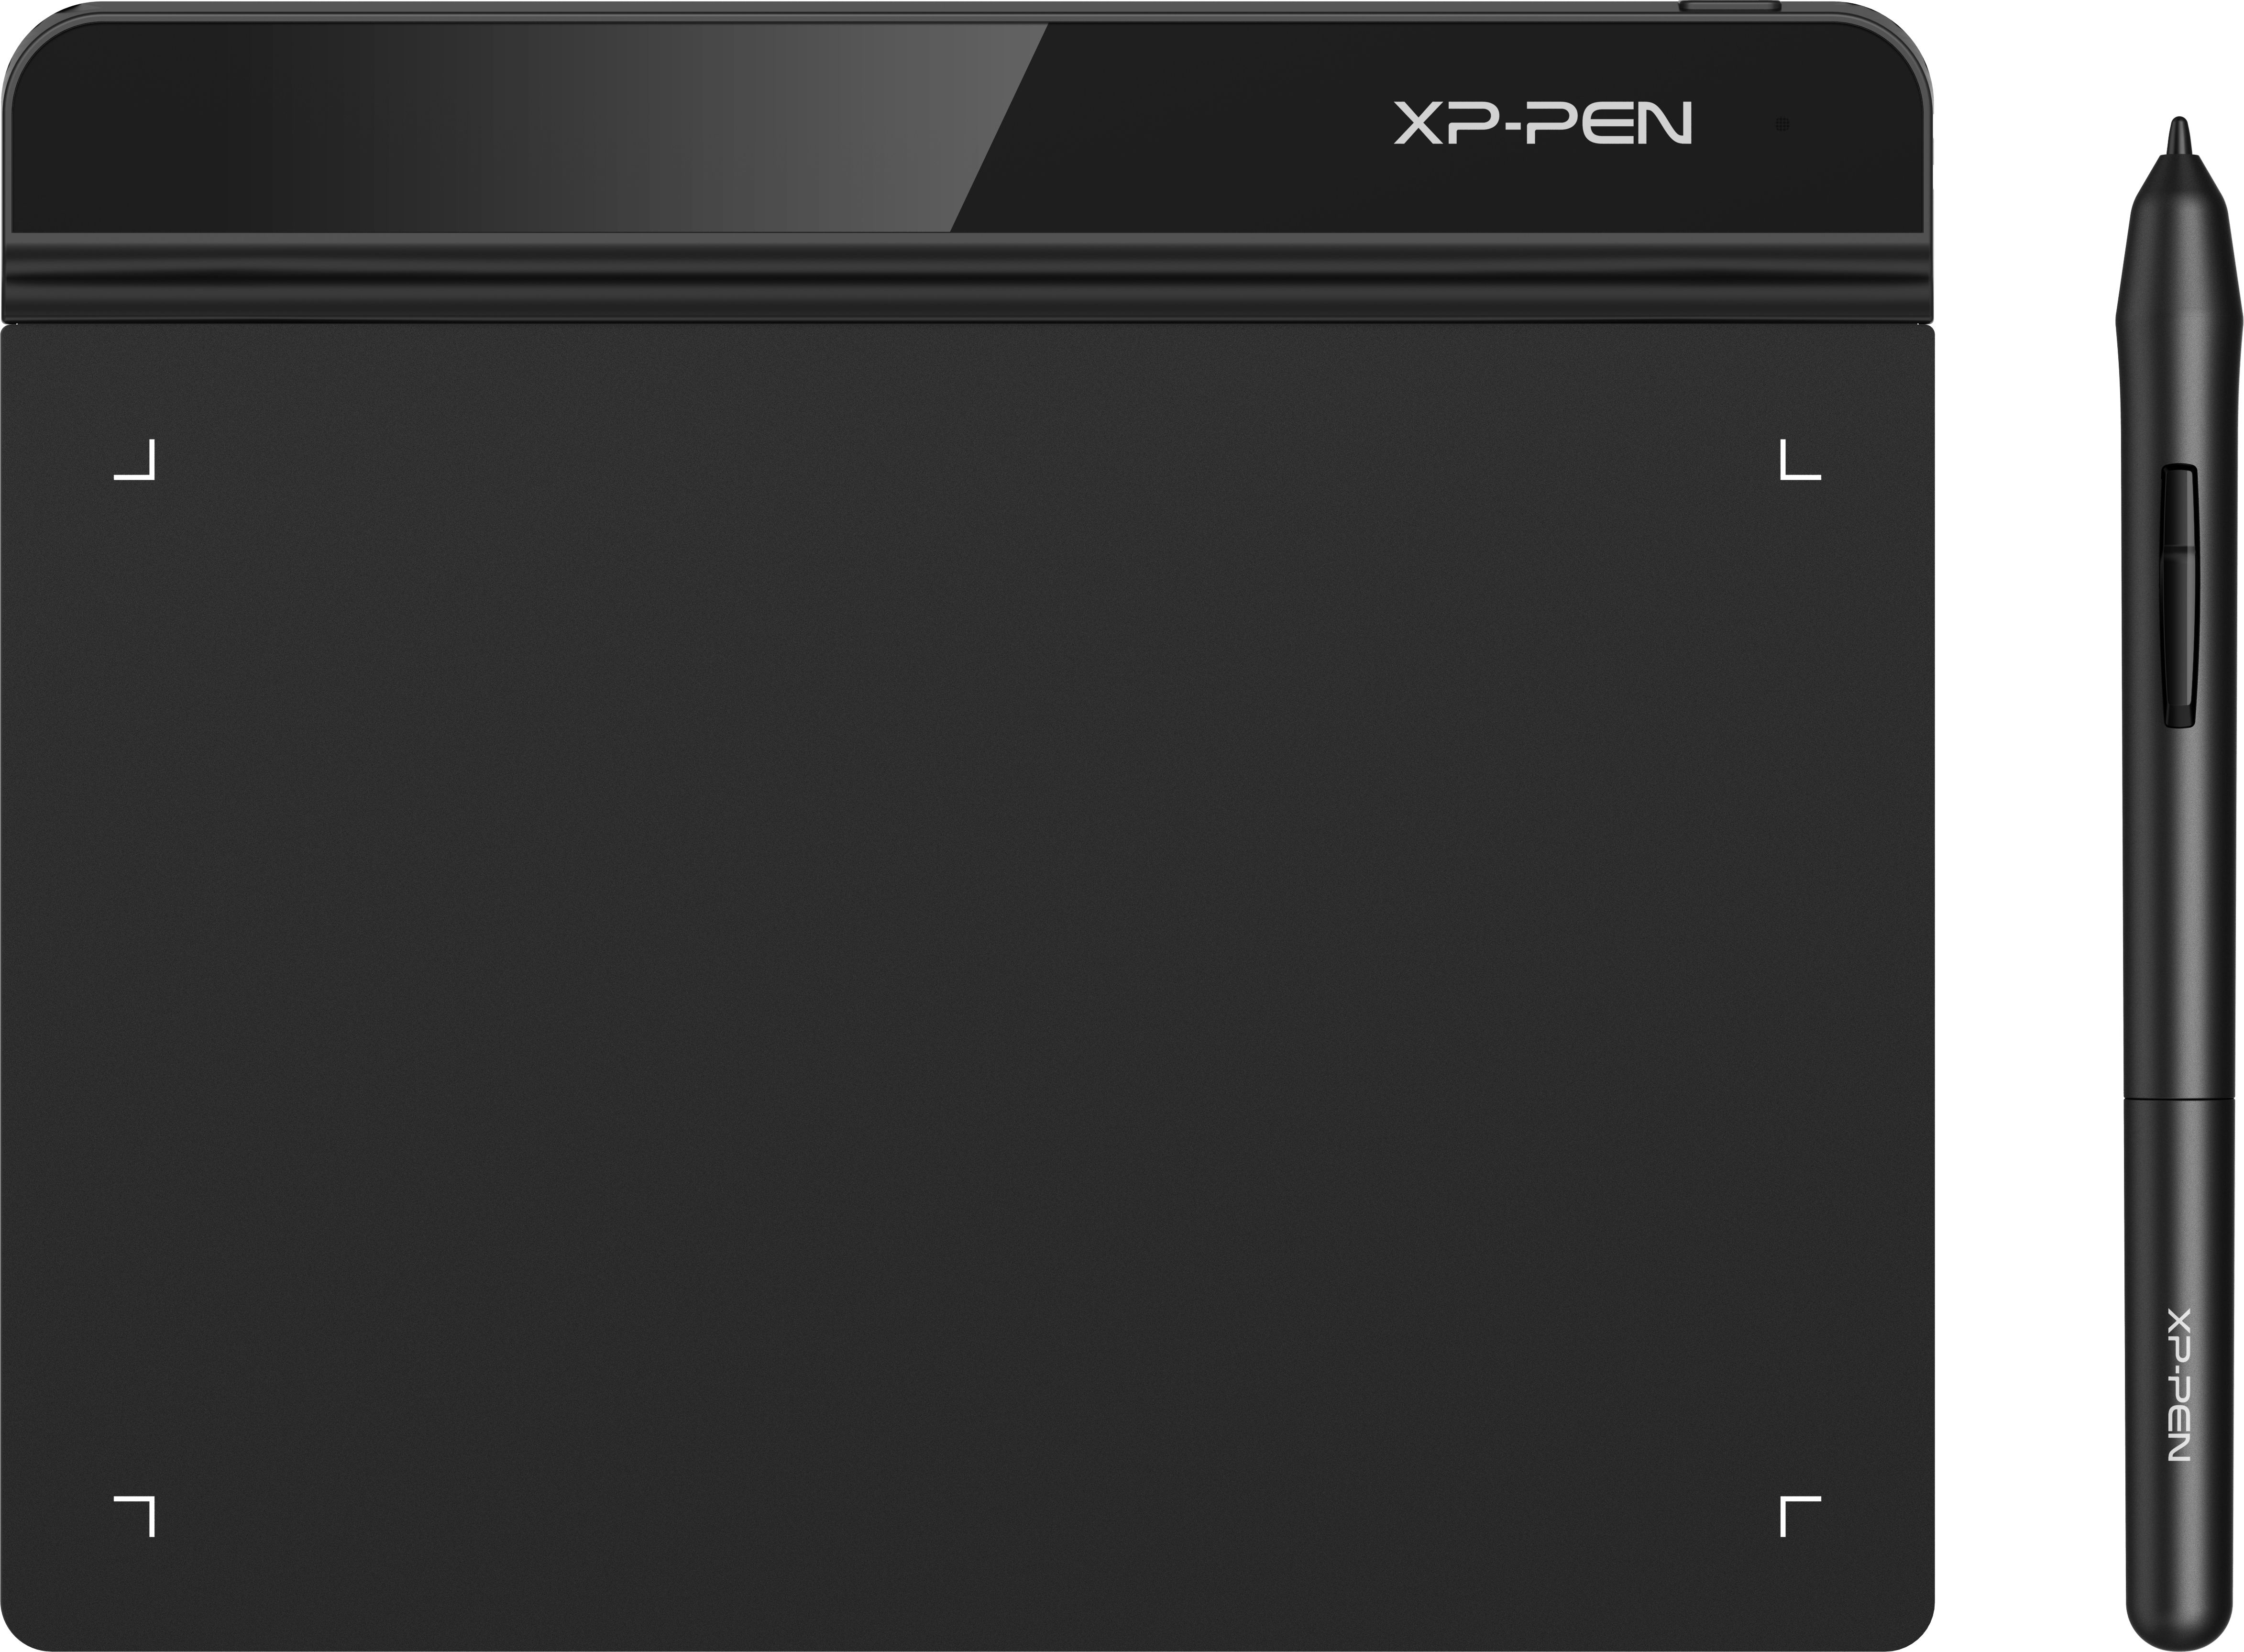 Графические планшеты xp pen купить. XP-Pen Star g640. Графический планшет XP Pen g640. Star g640 графический планшет. Графический планшет XP-Pen Star.